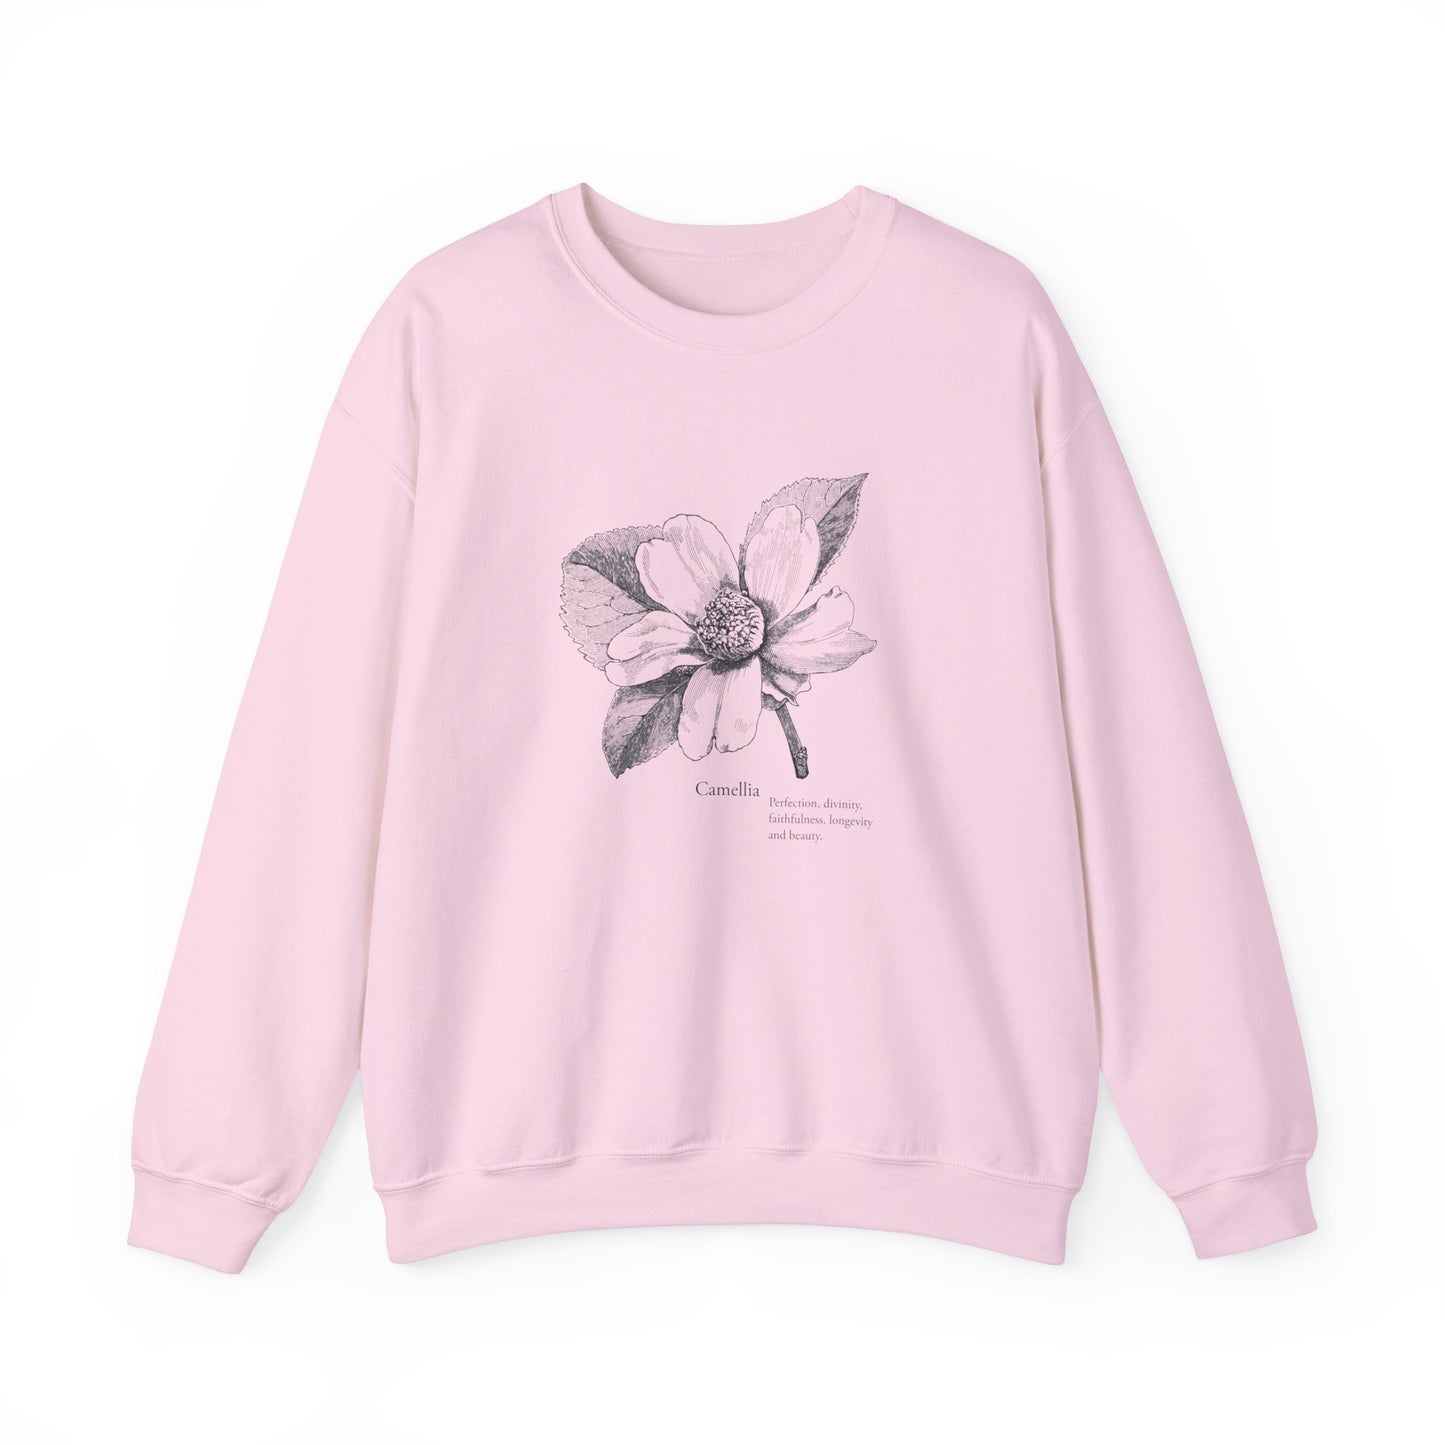 Camellia Sweatshirt